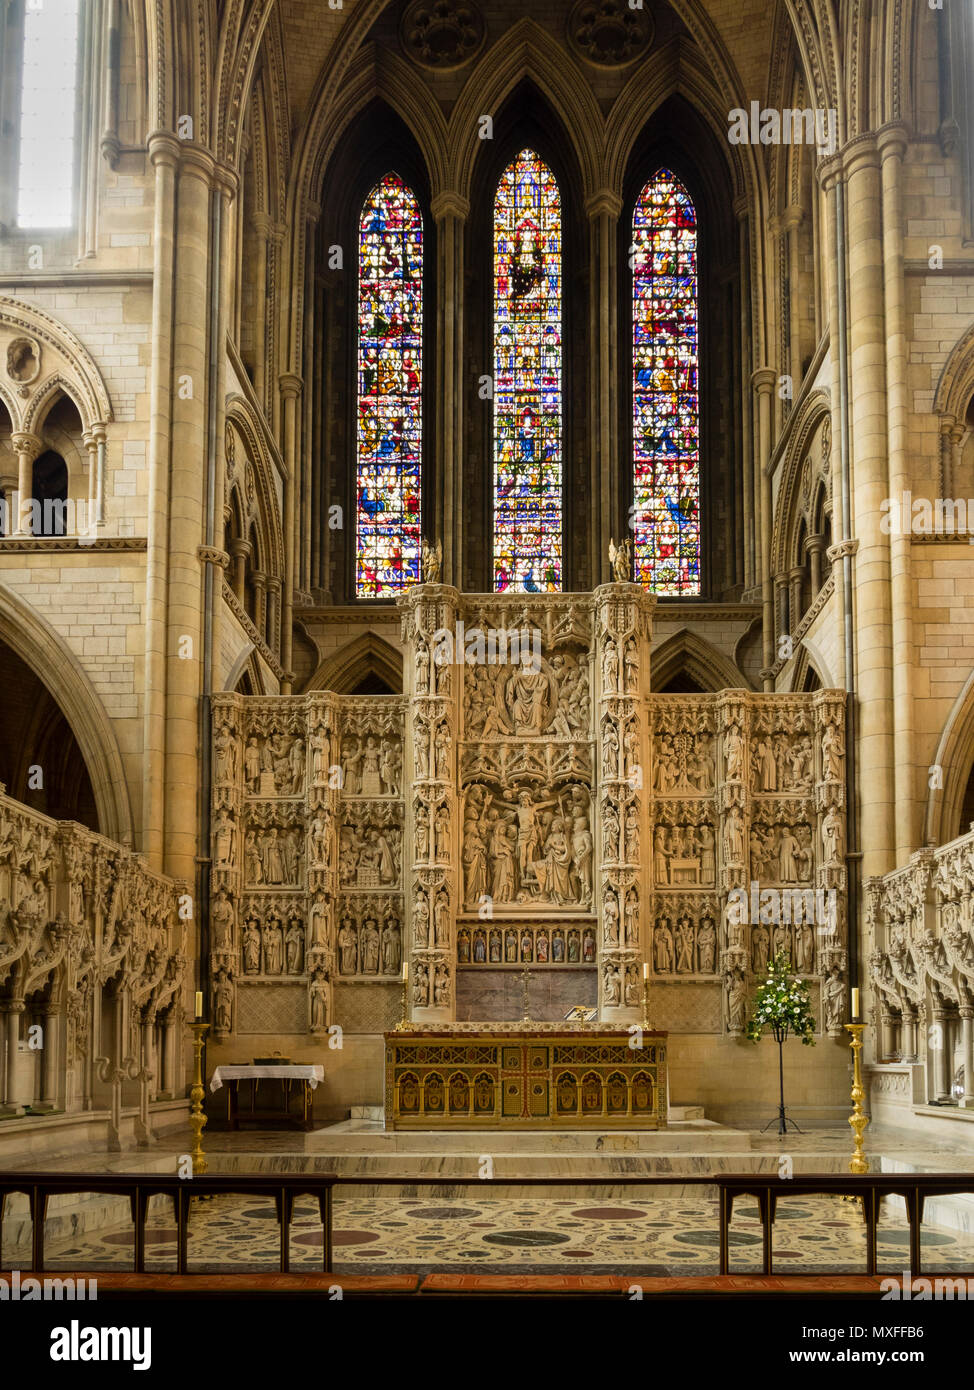 Altar y retablo intricadamente tallada por debajo de la vidriera de la Catedral de Truro Victoriana, Cornualles, en el REINO UNIDO Foto de stock